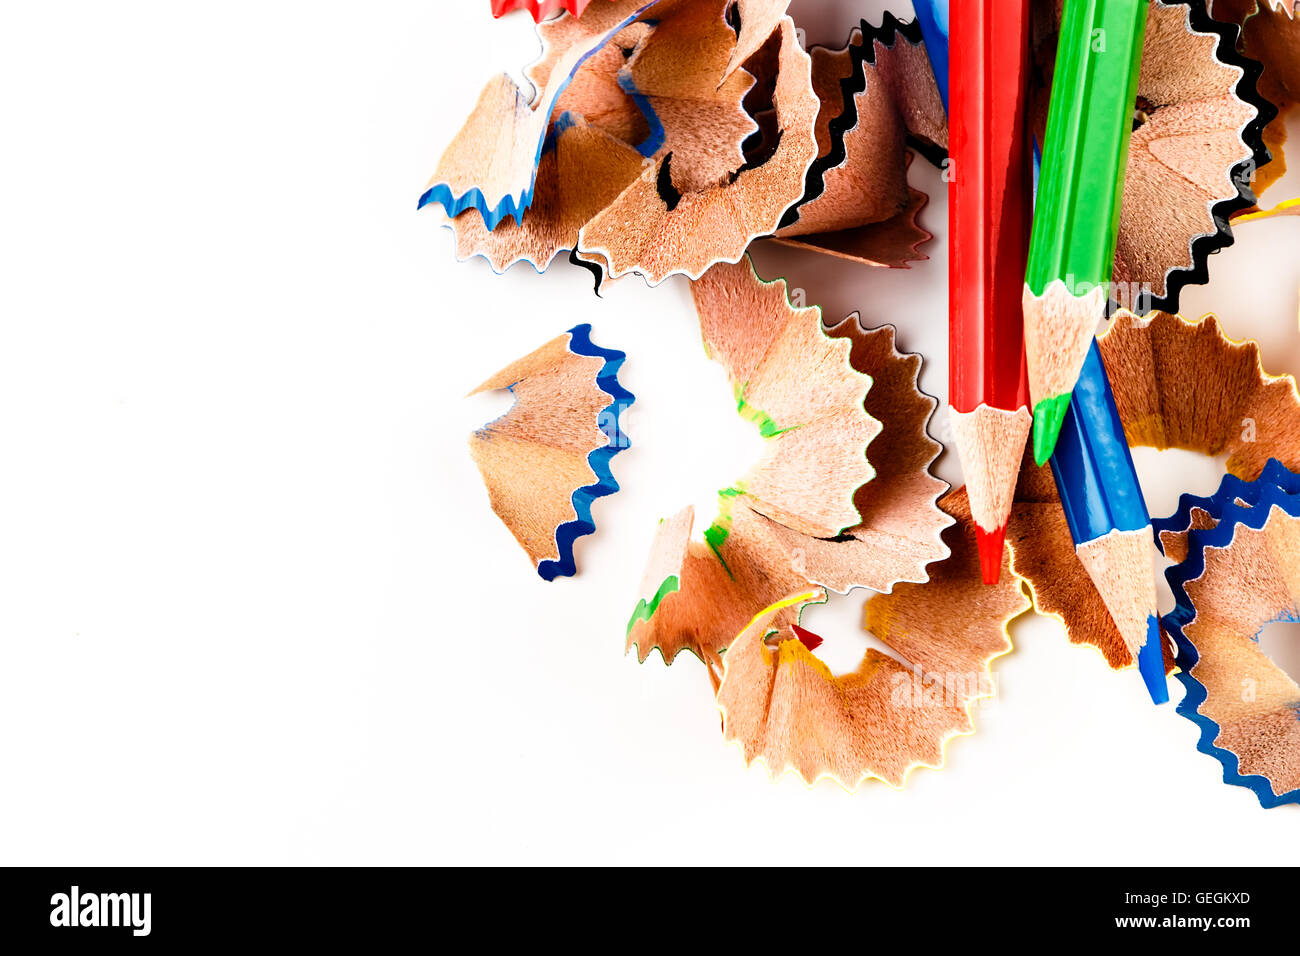 Farbstiften Späne mit Stifte Farbe von oben gesehen. Horizontales Bild. Stockfoto